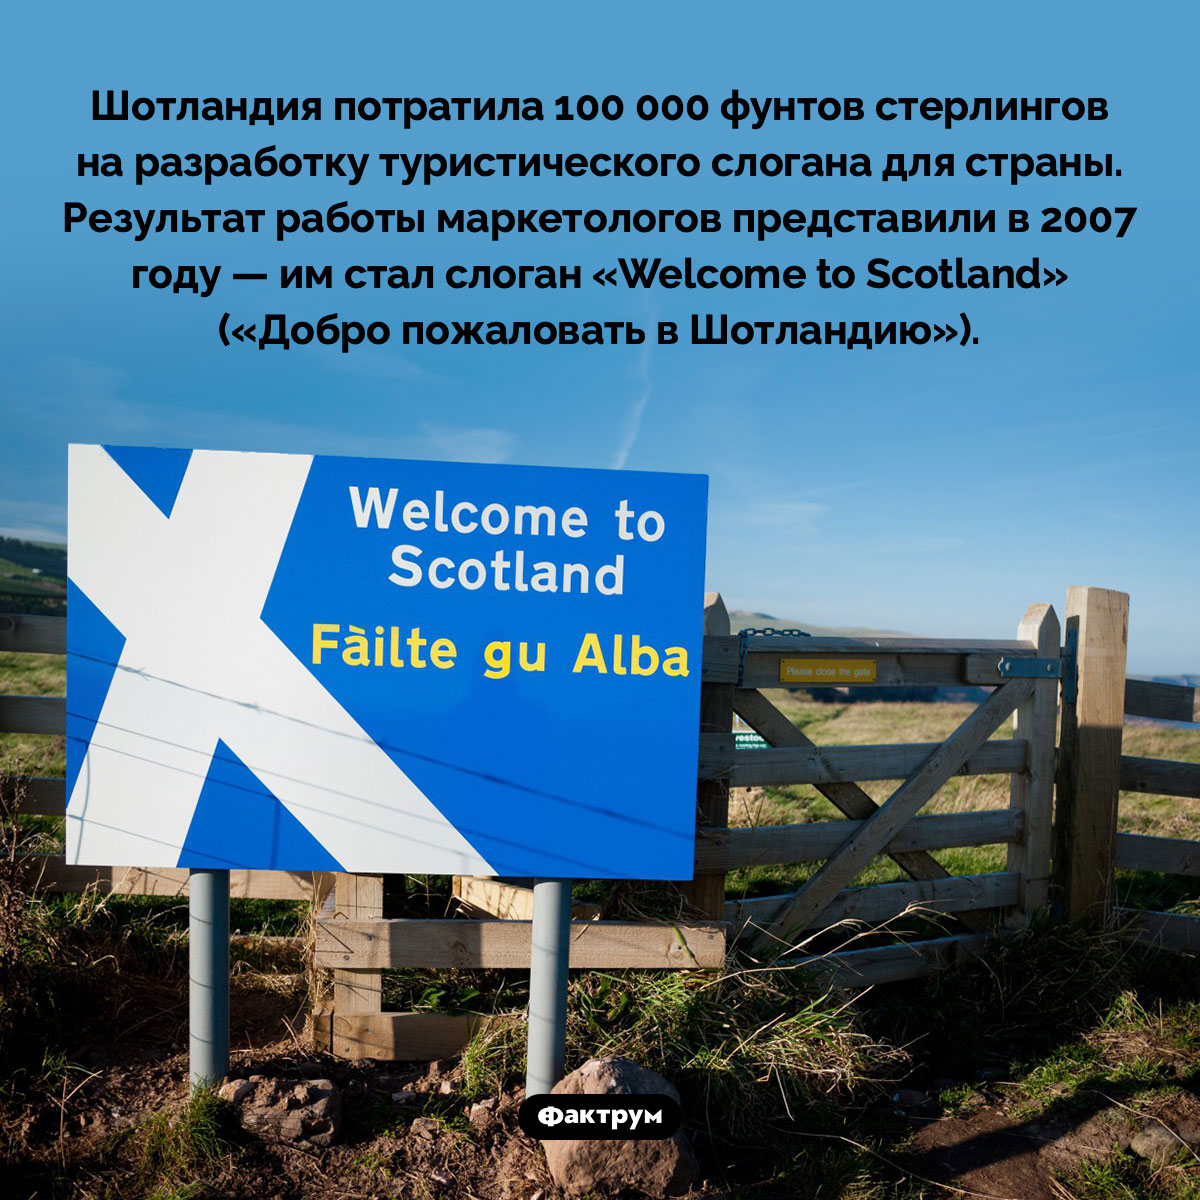 Туристический слоган Шотландии. Шотландия потратила 100 000 фунтов стерлингов на разработку туристического слогана для страны. Результат работы маркетологов представили в 2007 году — им стал слоган «Welcome to Scotland» («Добро пожаловать в Шотландию»).